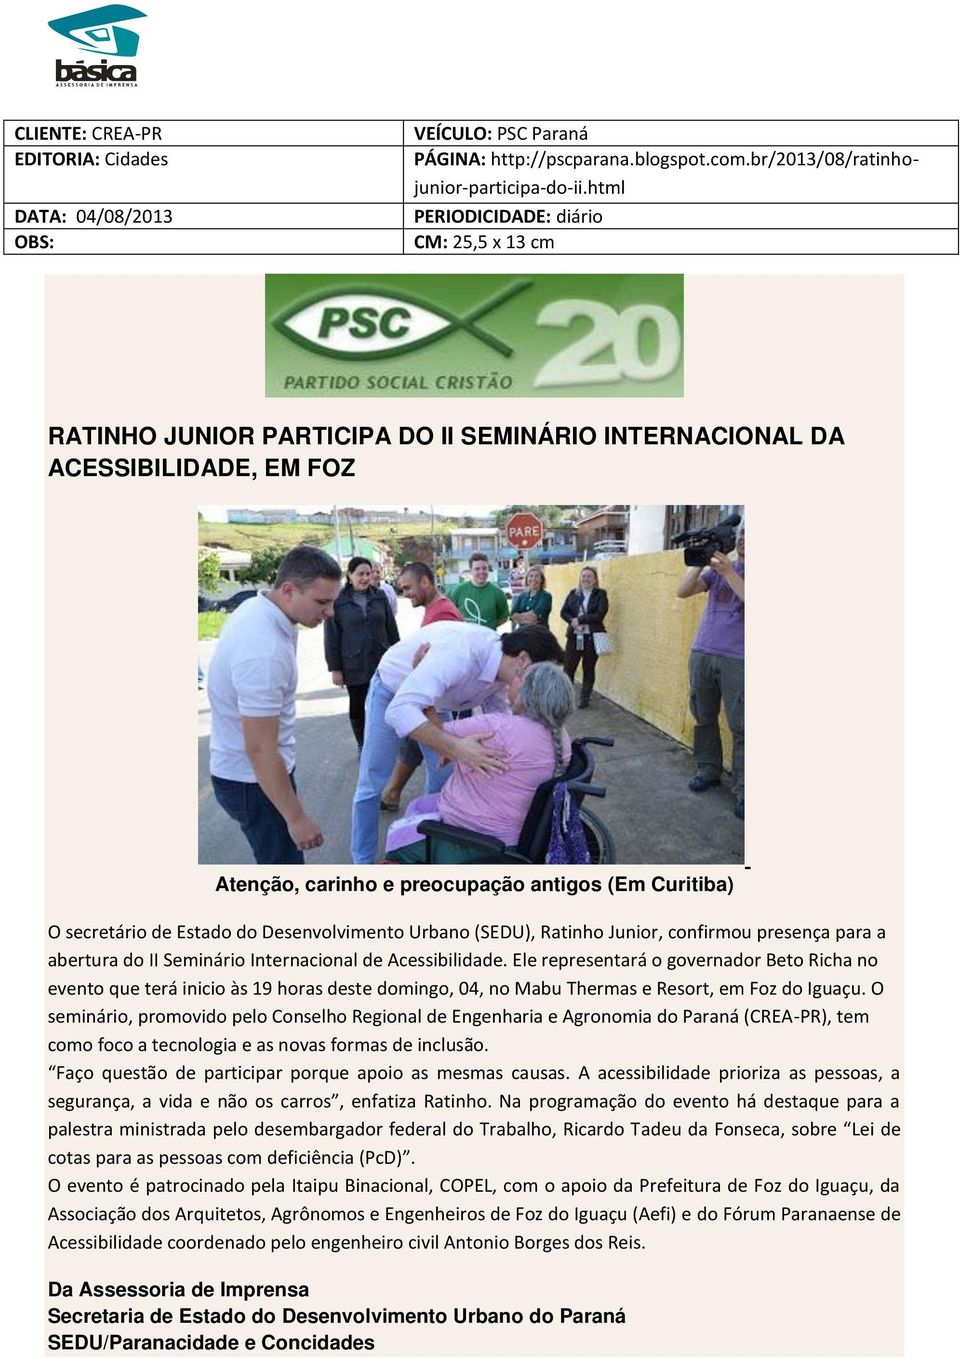 Urbano (SEDU), Ratinho Junior, confirmou presença para a abertura do II Seminário Internacional de Acessibilidade.